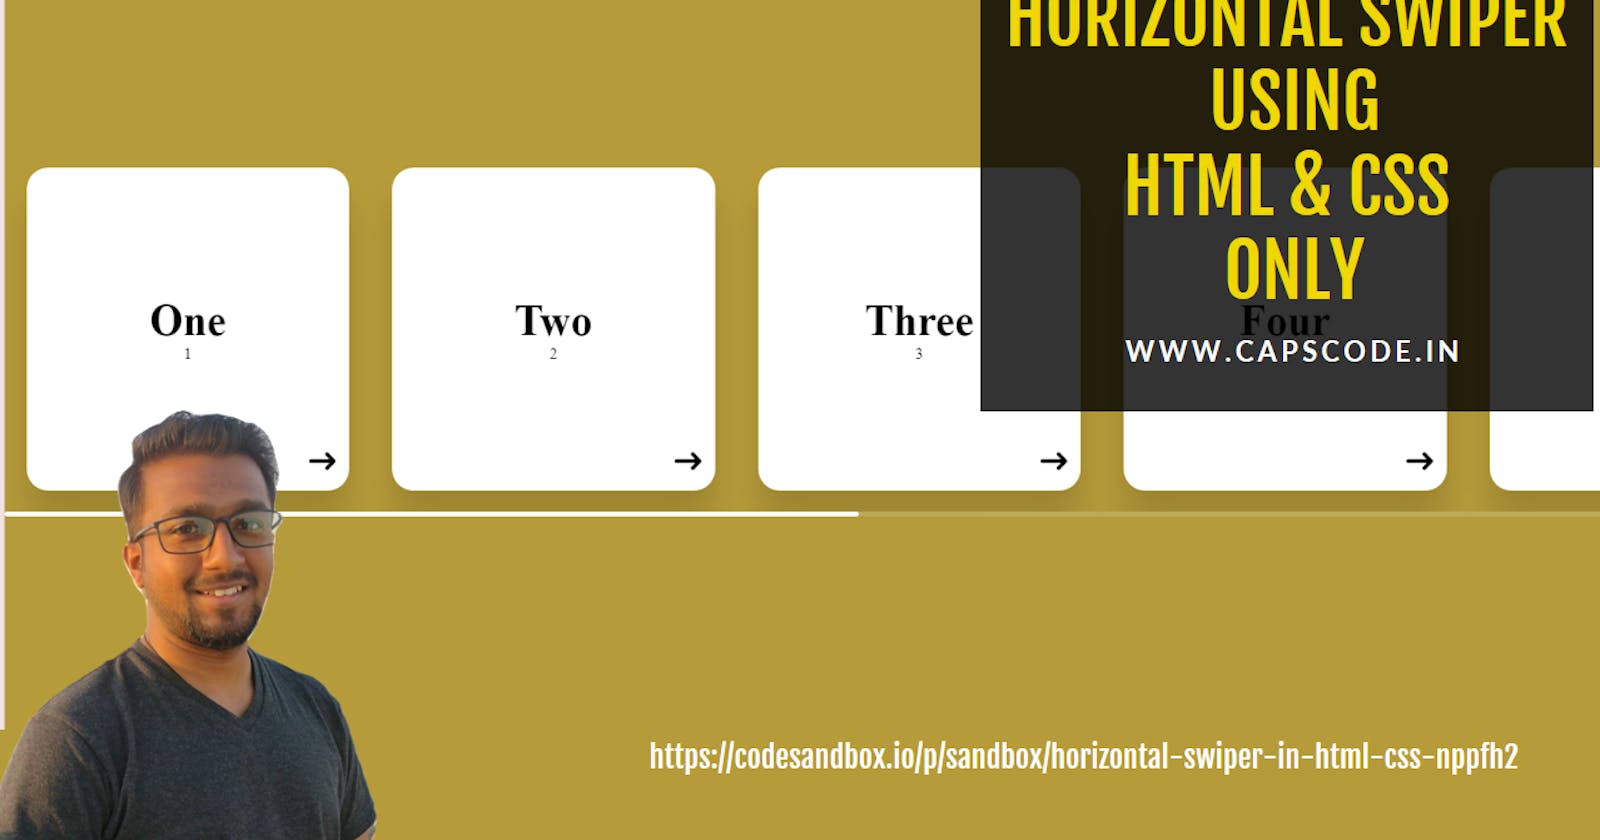 Horizontal swiper using HTML & CSS only